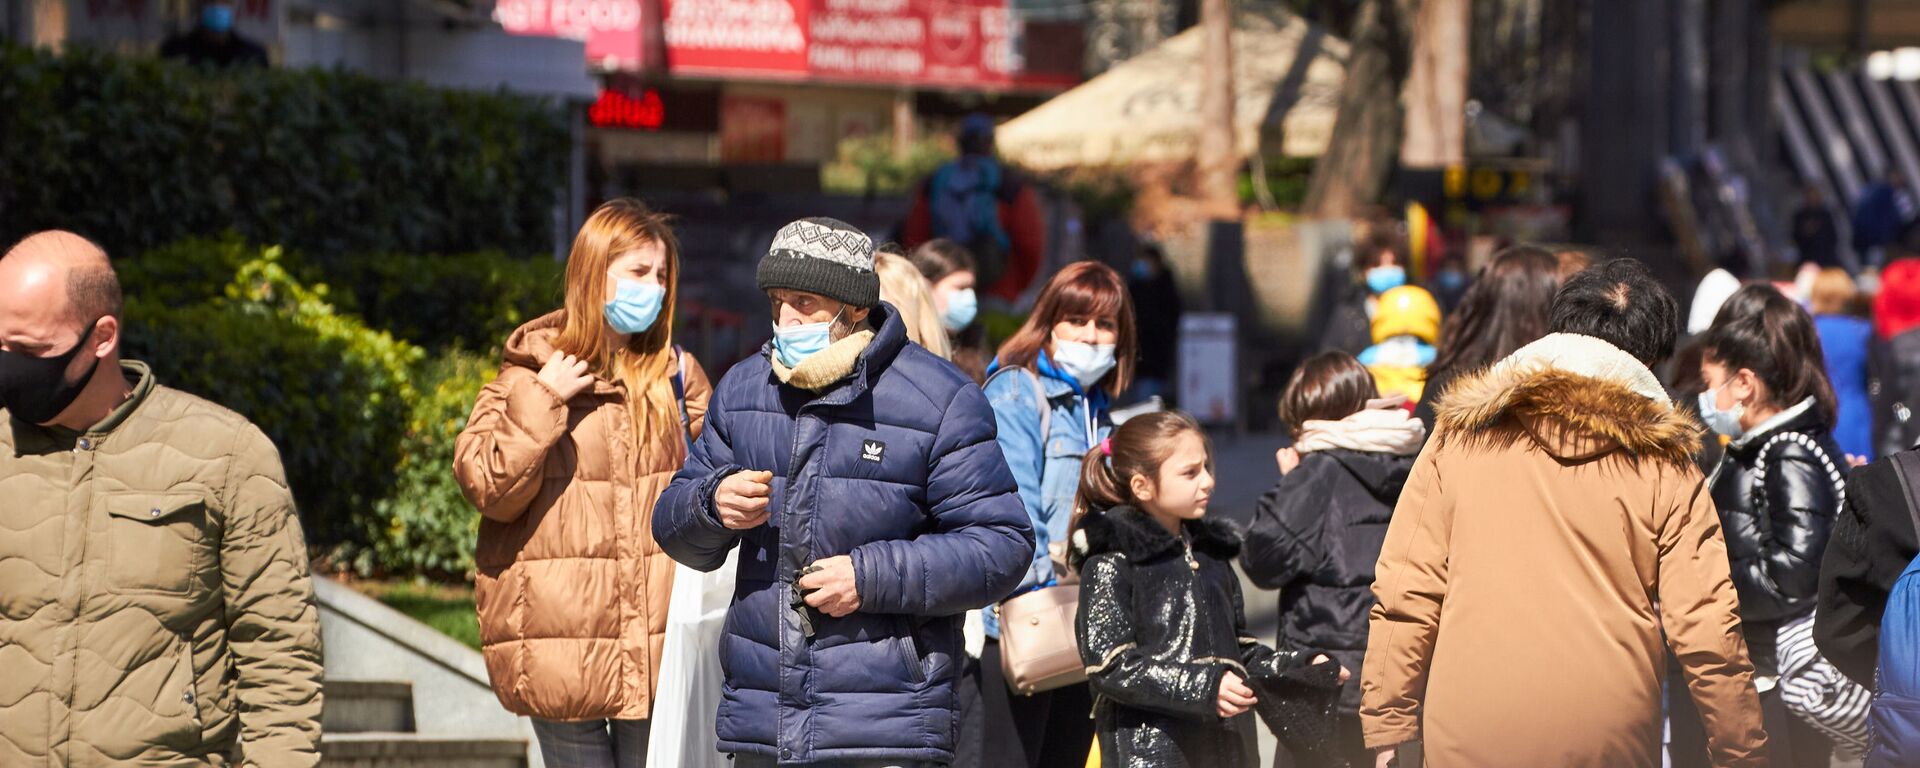 Эпидемия коронавируса -  прохожие в масках на улице - Sputnik Грузия, 1920, 31.03.2021